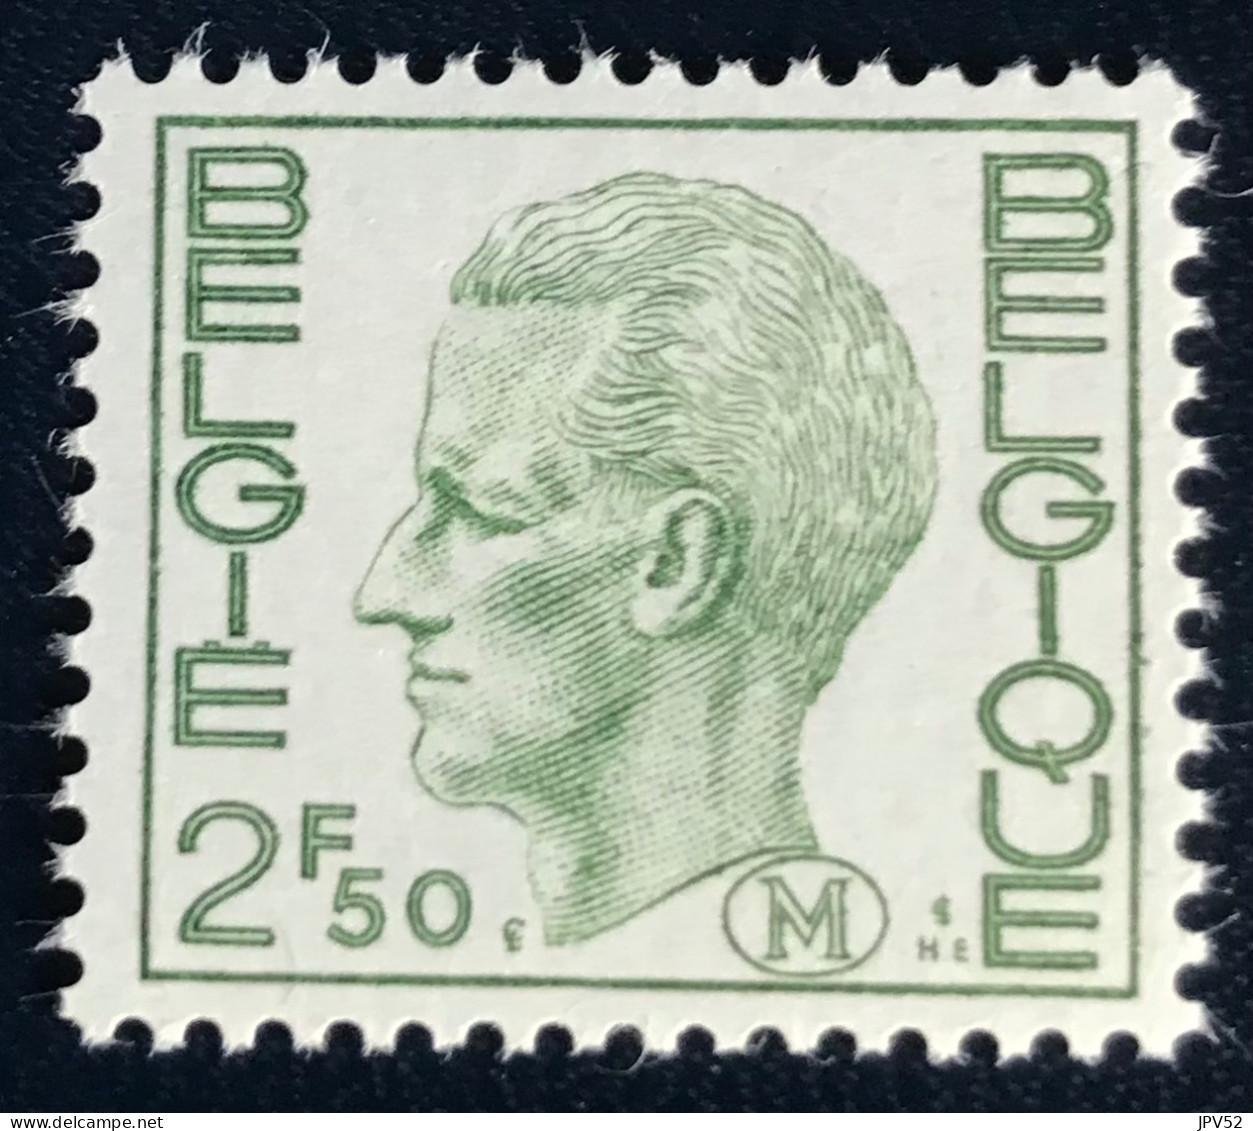 België - Belgique - C18/40 - 1972 - MNH - Michel 3 - Militair - Koning Boudewijn - Stamps [M]